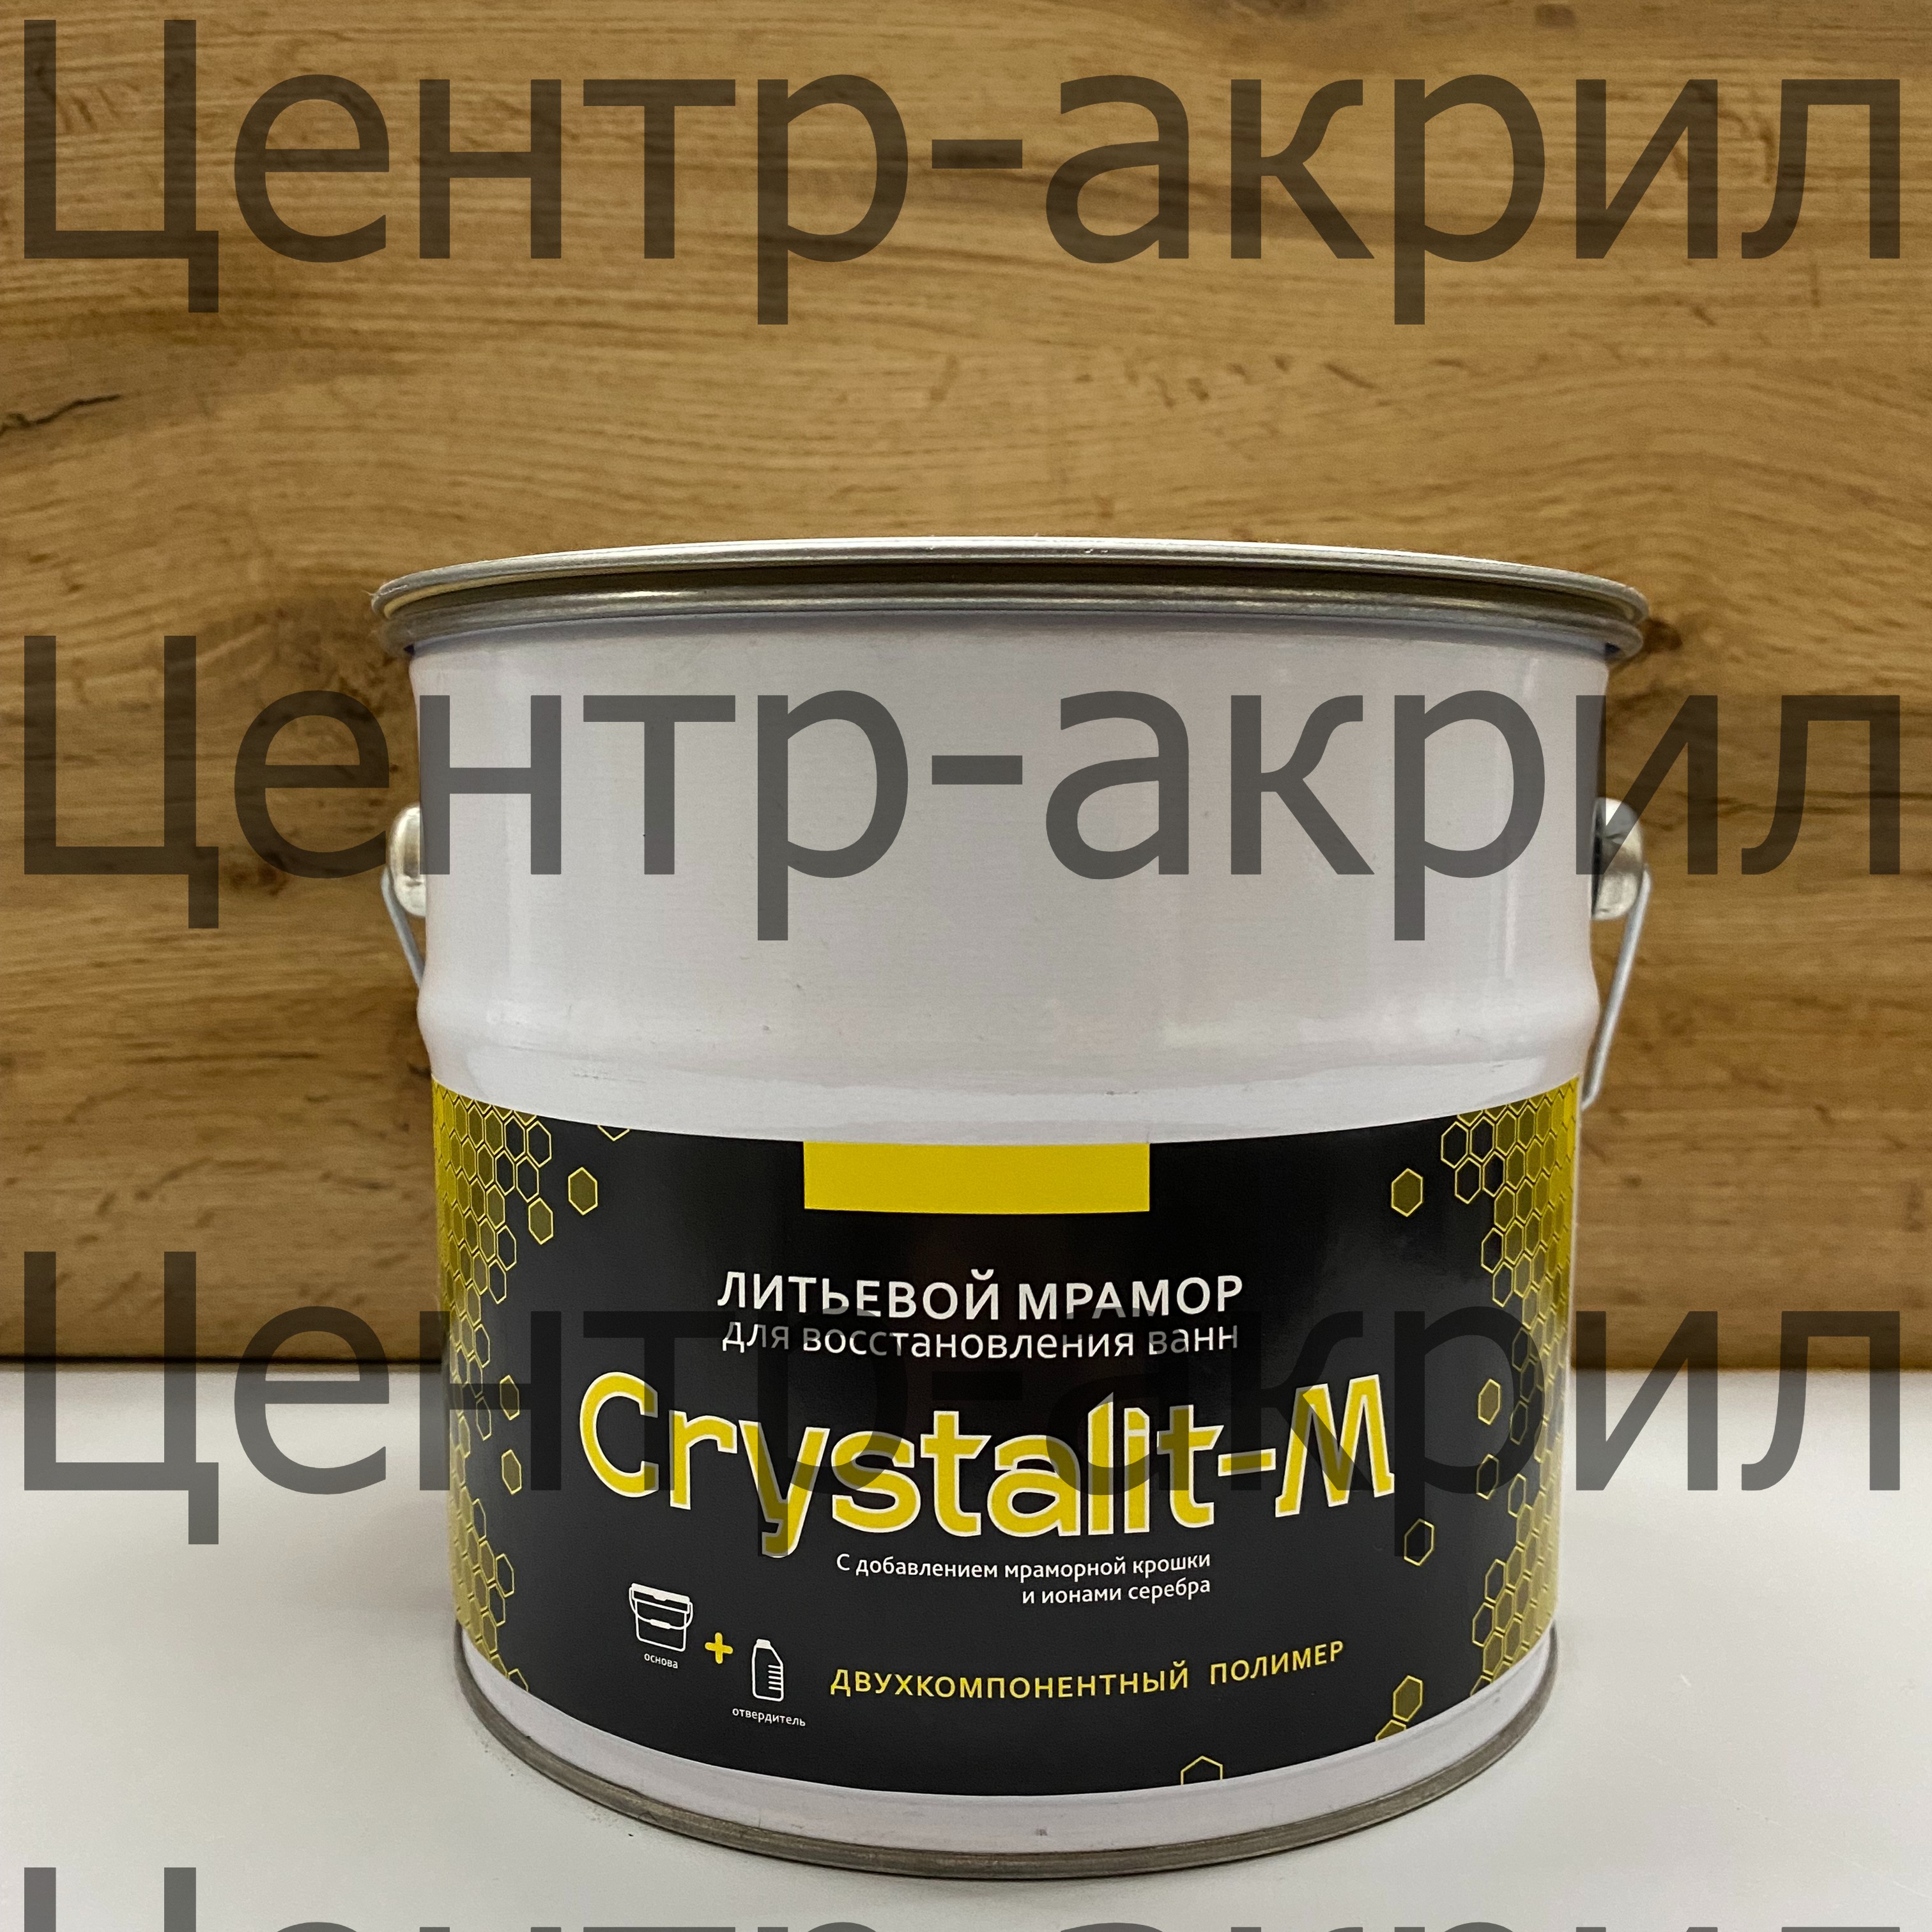 Купить литьевой мрамор Кристалит-М для реставрации ванн, оптом и в розницу